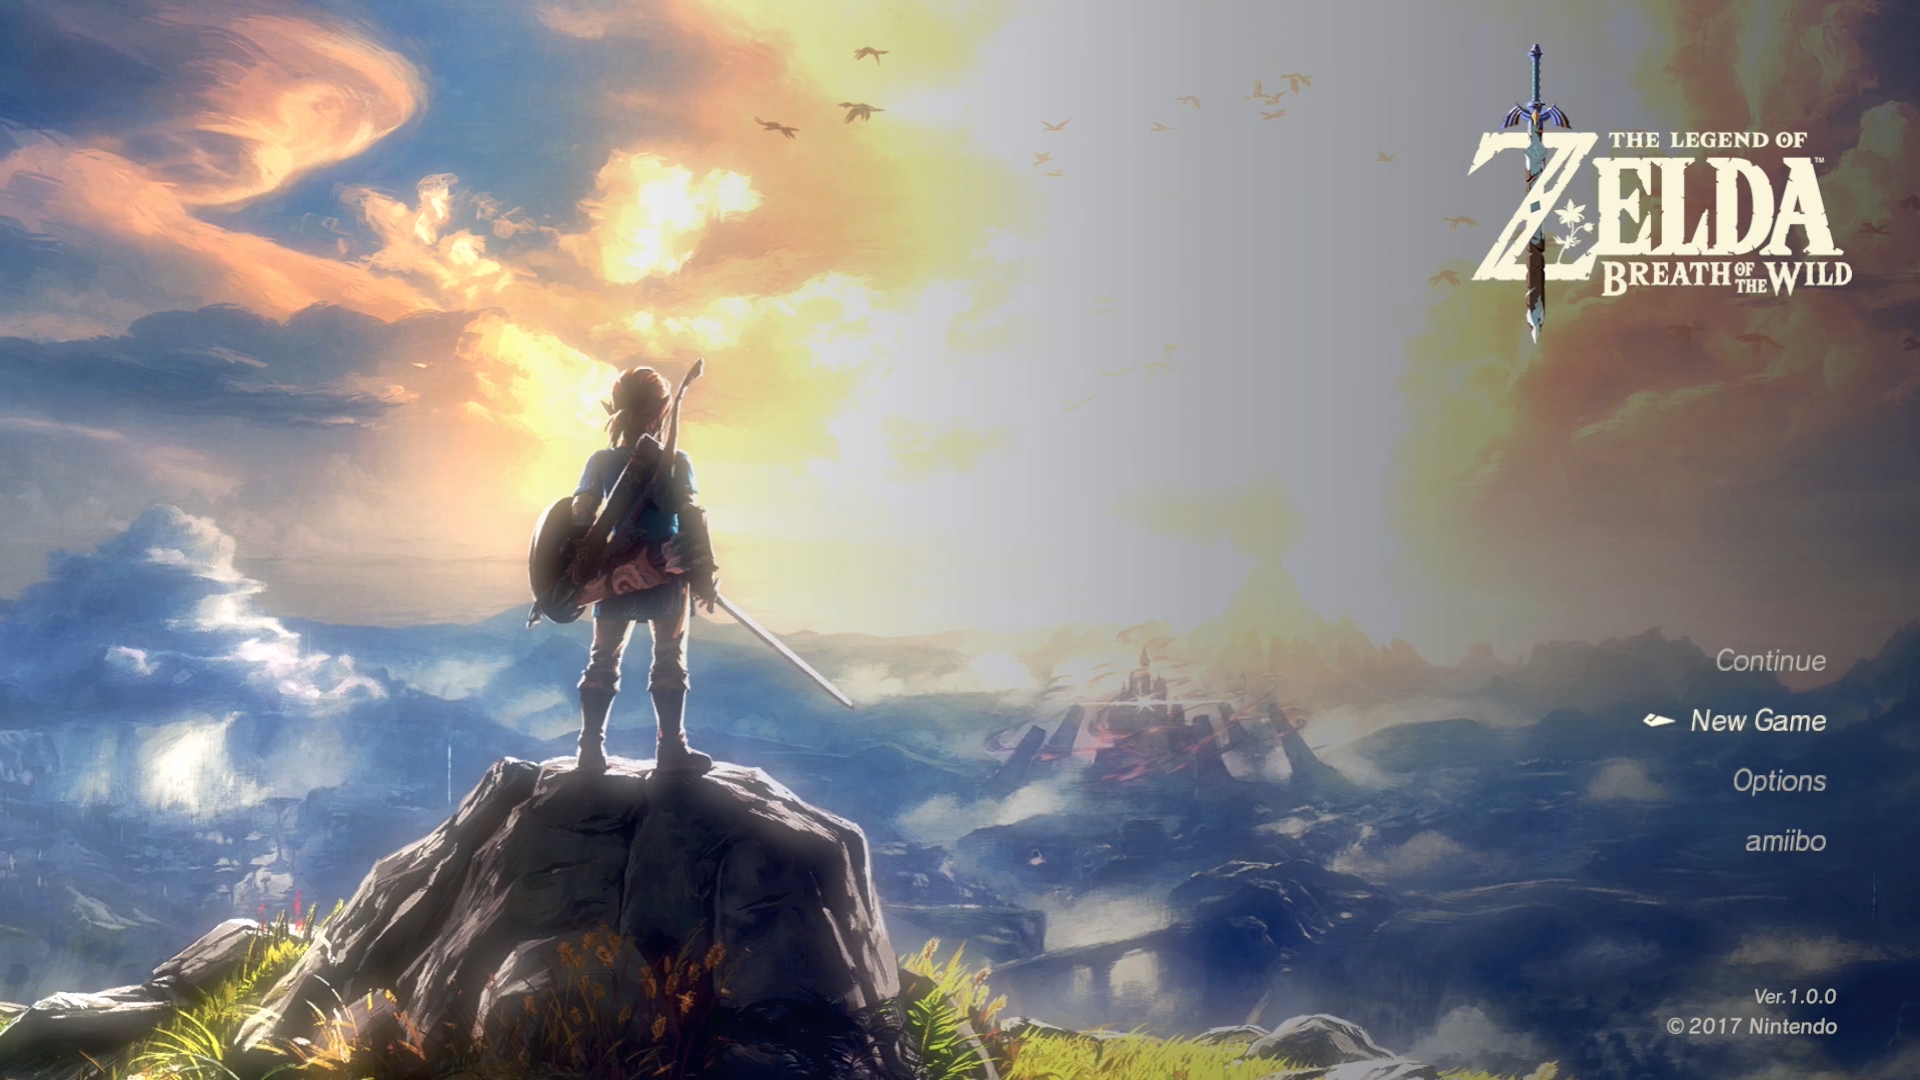 Game: The Legend of Zelda: Breath of the Wild [Wii U, 2017, Nintendo